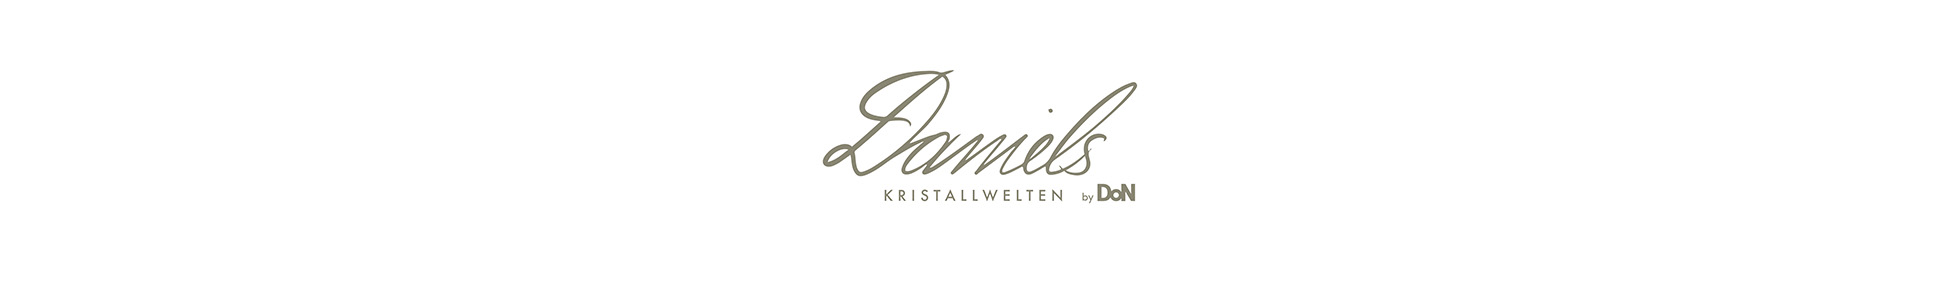 Daniels Kristallwelten by DoN